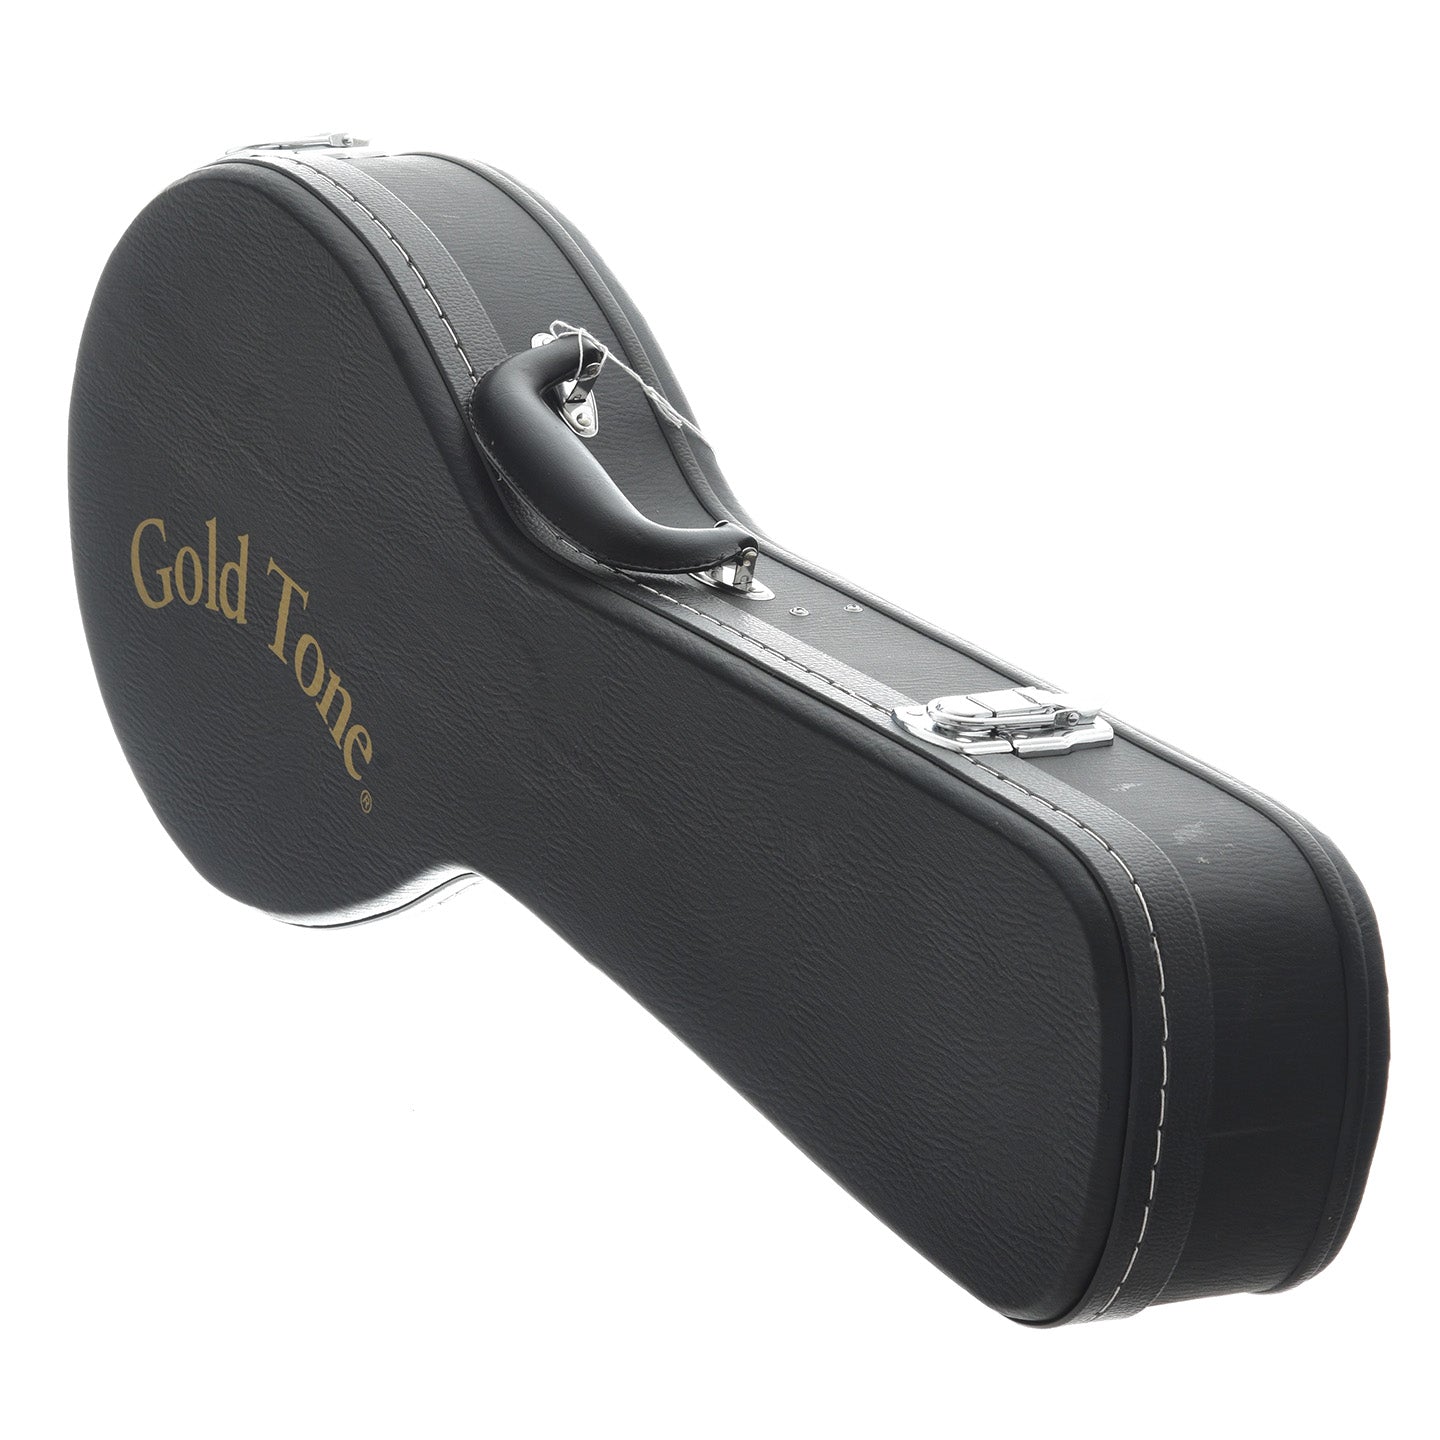 Image 11 of Gold Tone Soprano Banjo Ukulele & Case - SKU# GTBUS : Product Type Banjo Ukuleles : Elderly Instruments